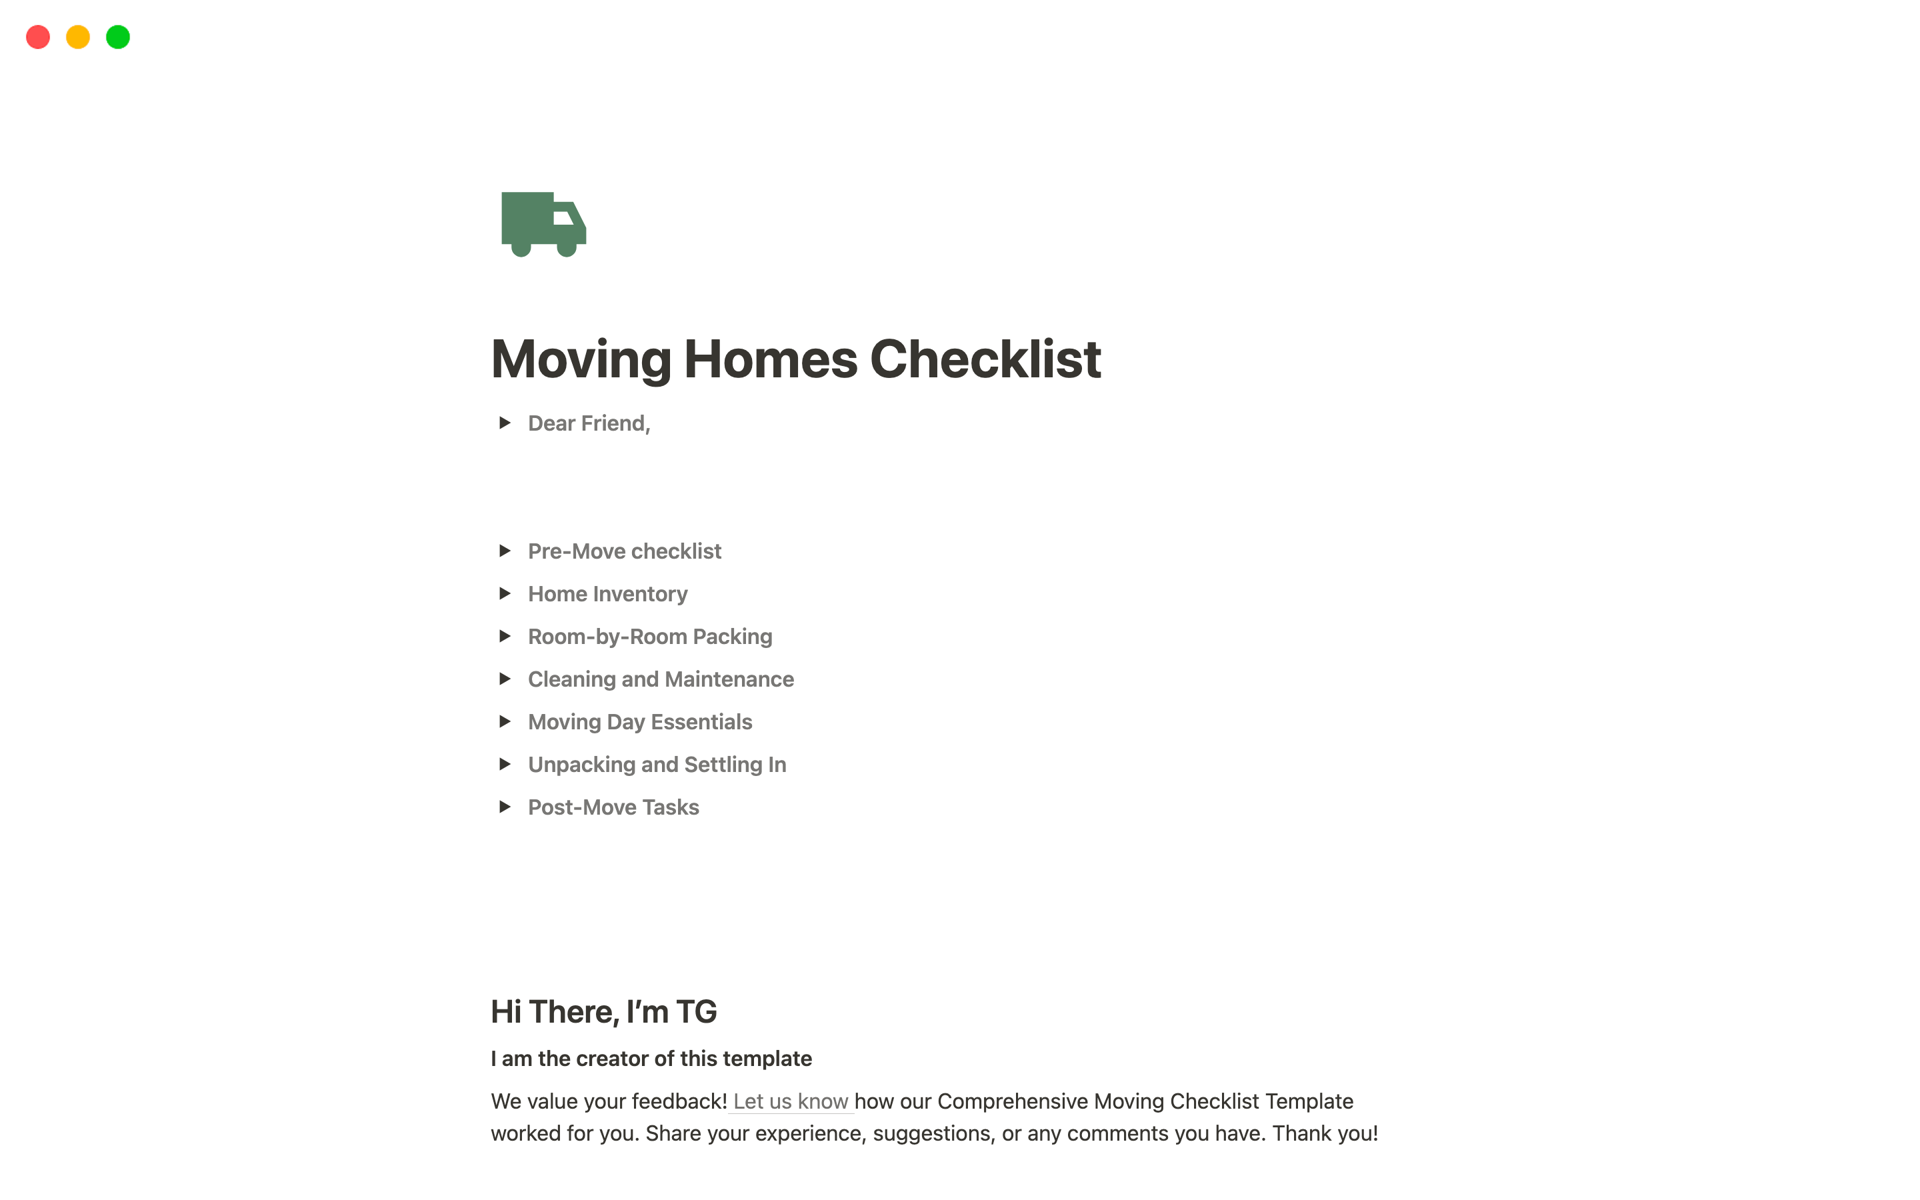 Moving Homes Checklist님의 템플릿 미리보기